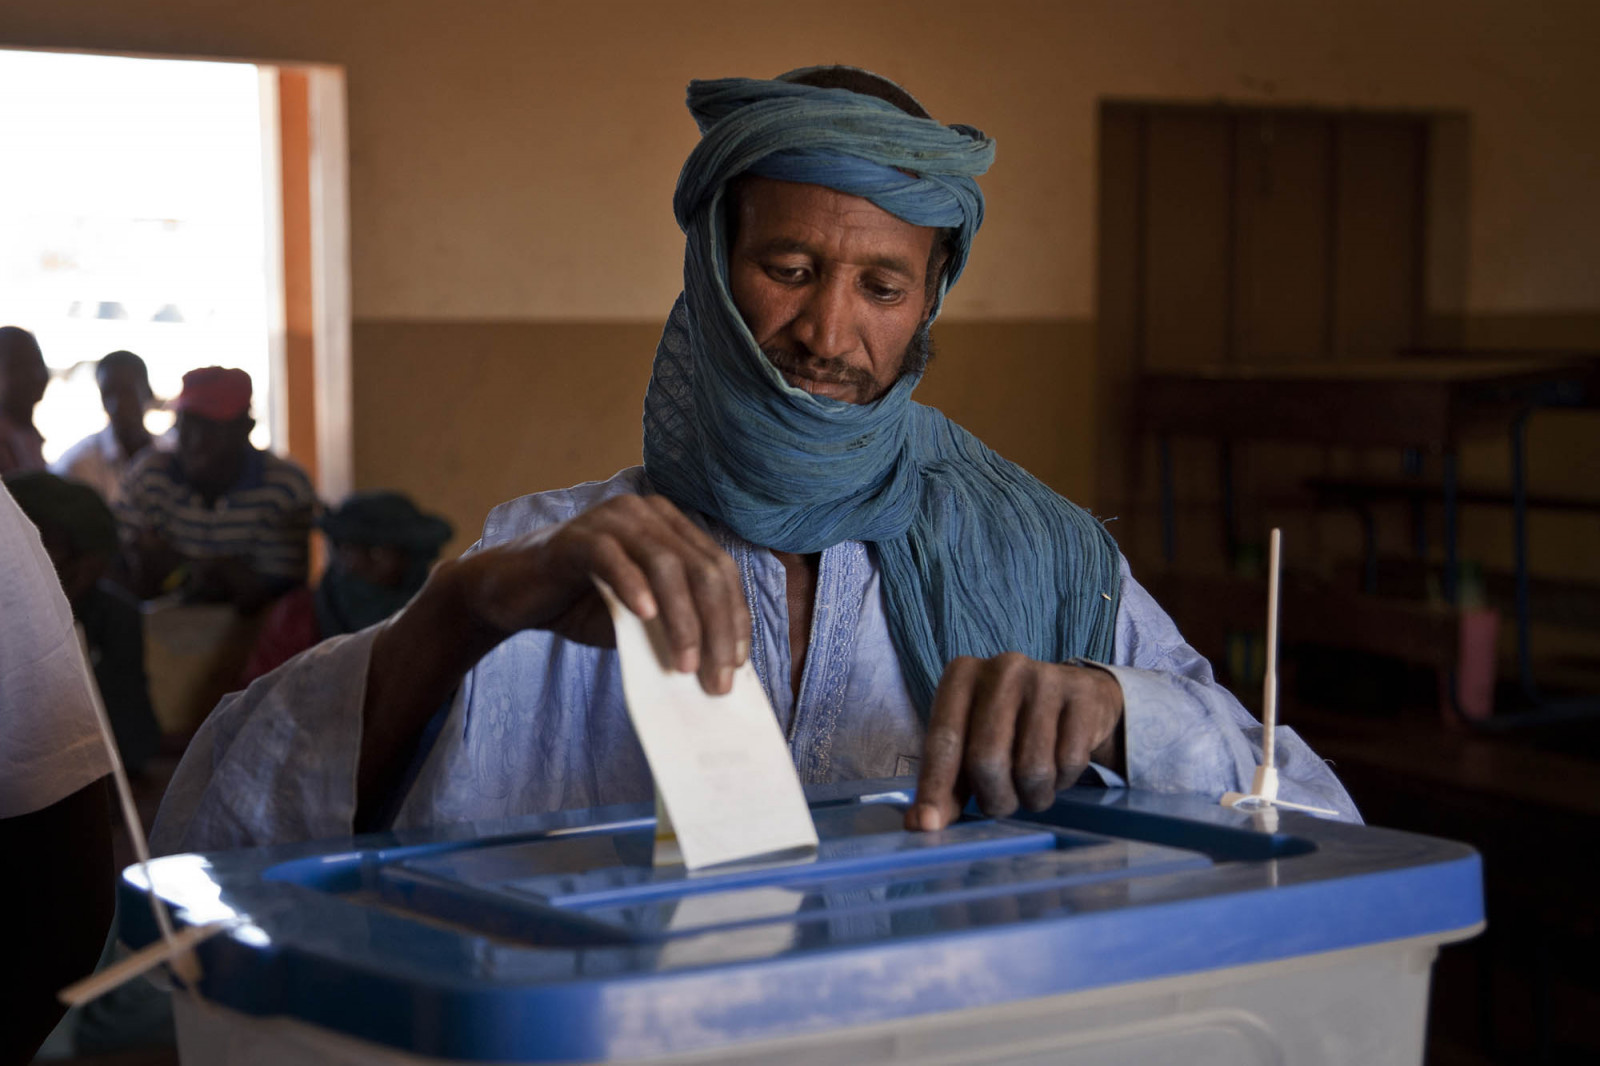 Gecontesteerde verkiezingen duwen Mali dieper in onzekerheid